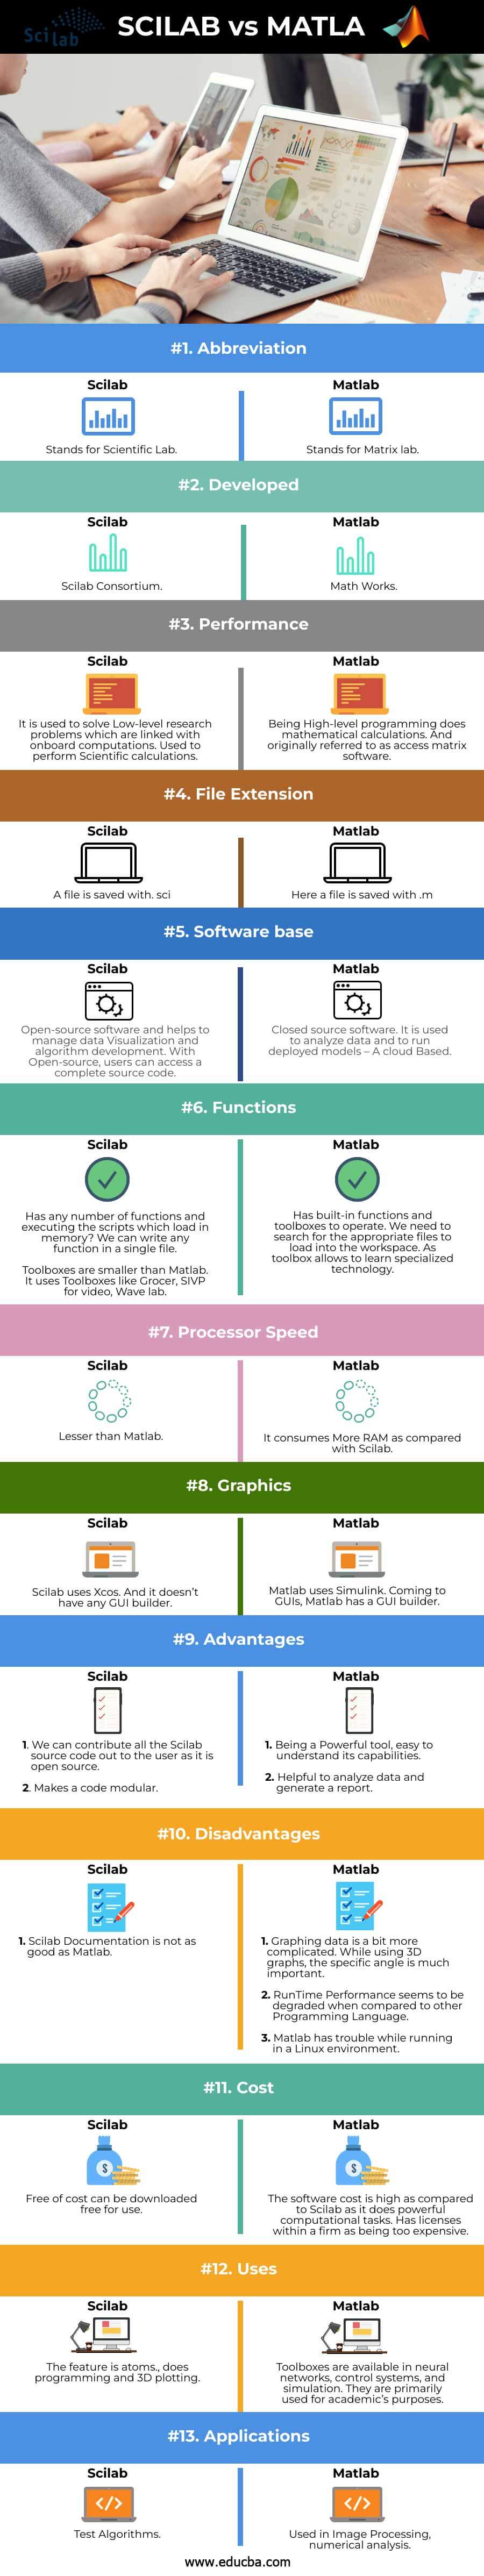 Scilab-vs-Matlab-info